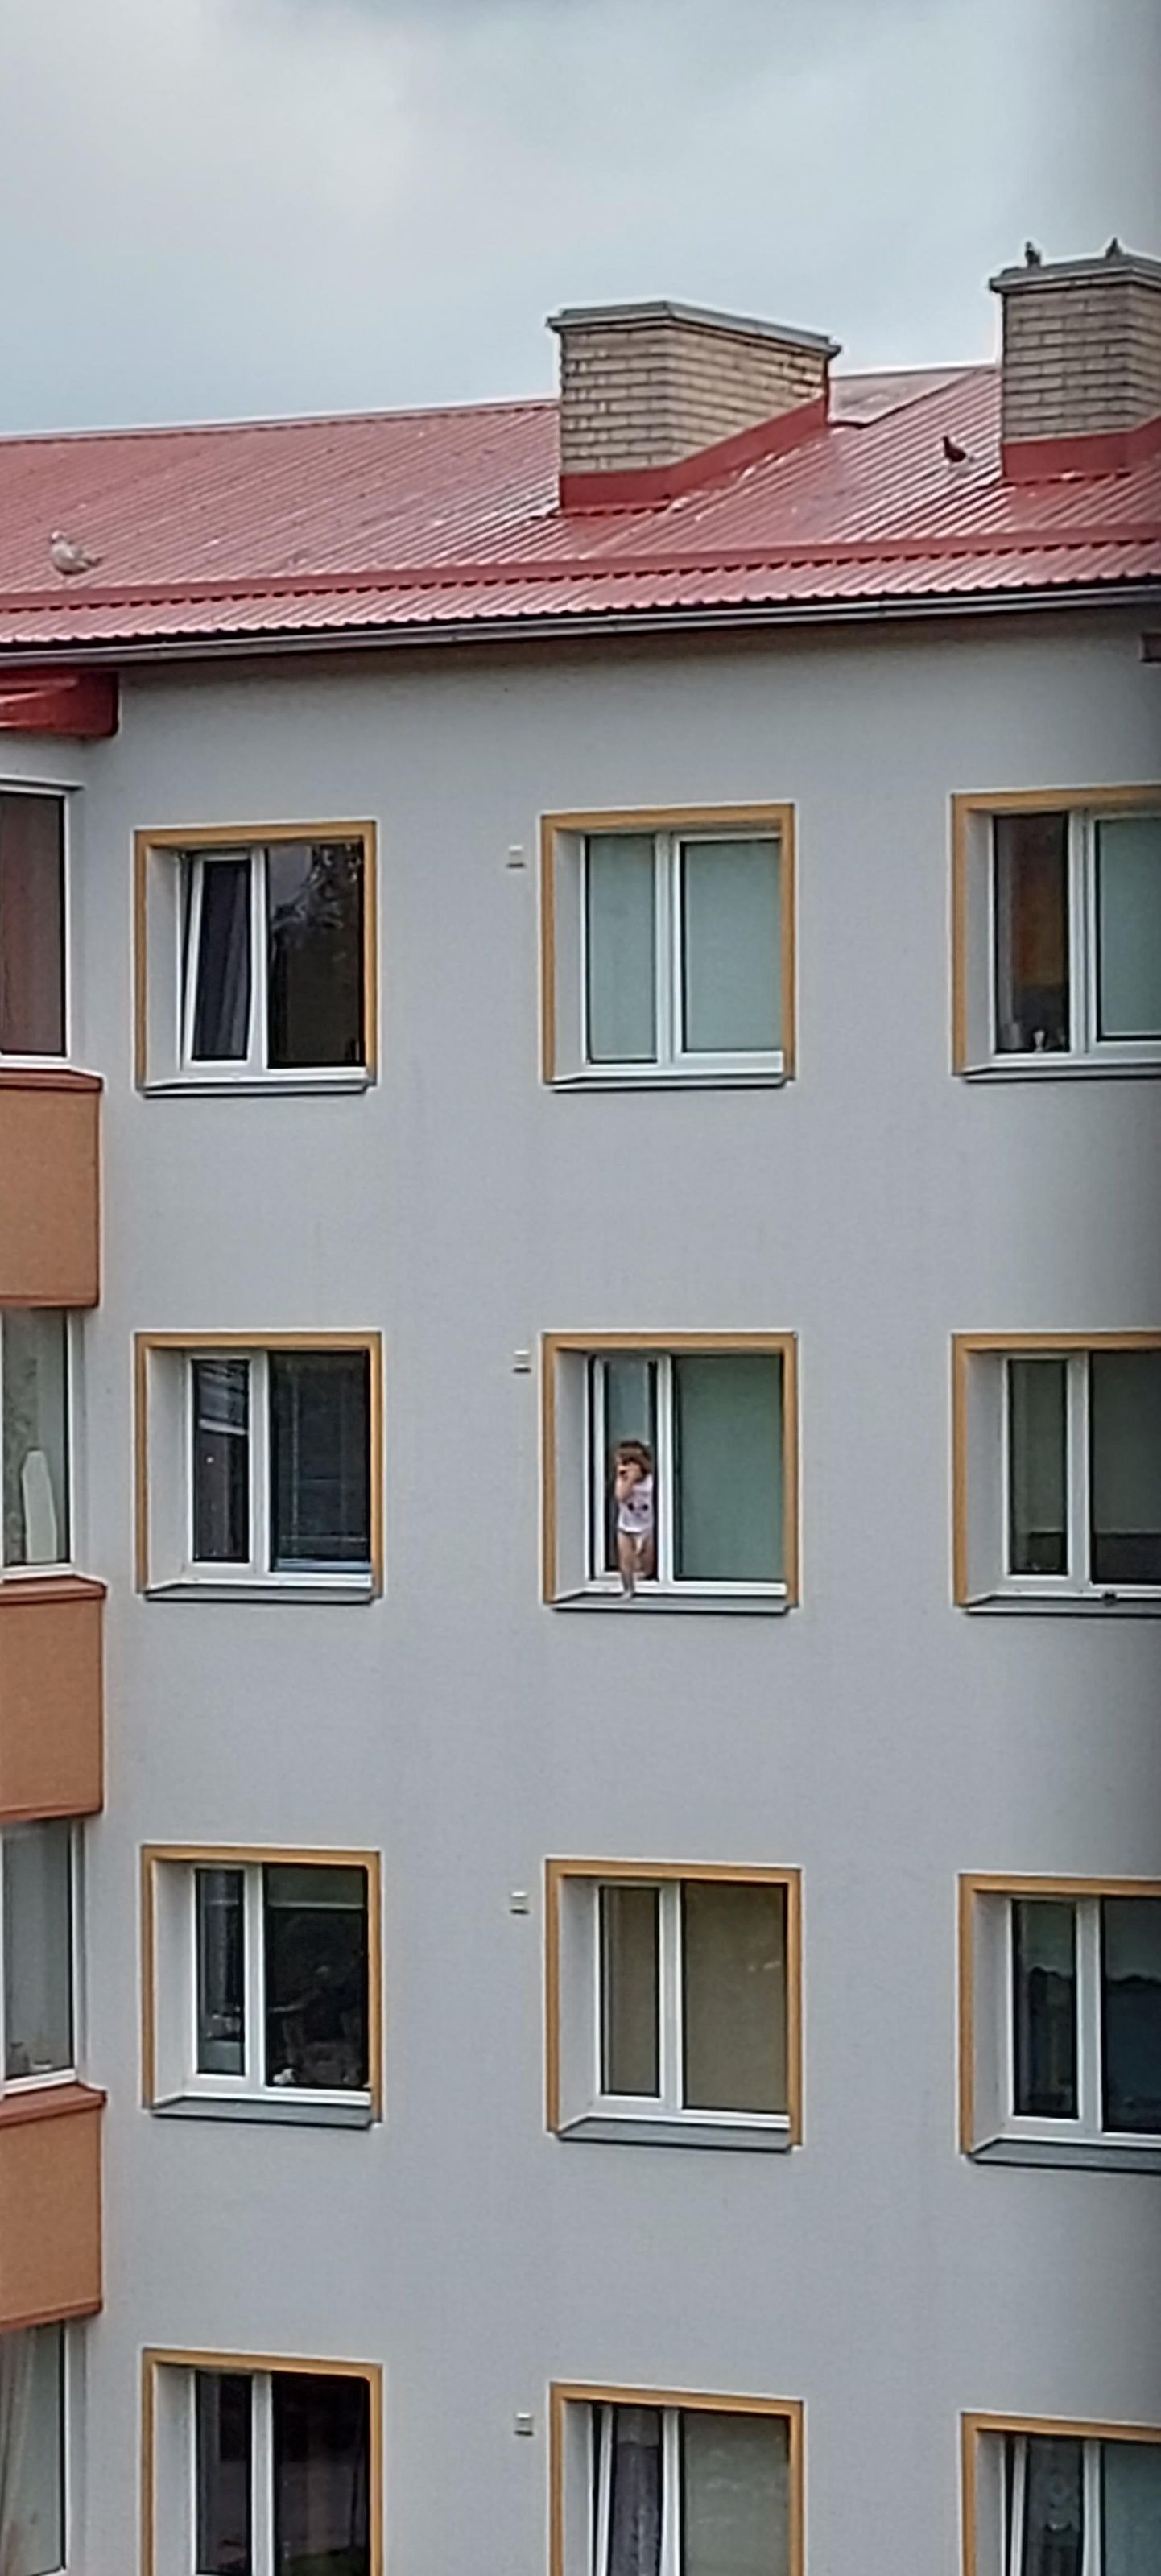 Маленький ребенок вышел на подоконник четвертого этажа жилого дома в Эстонии